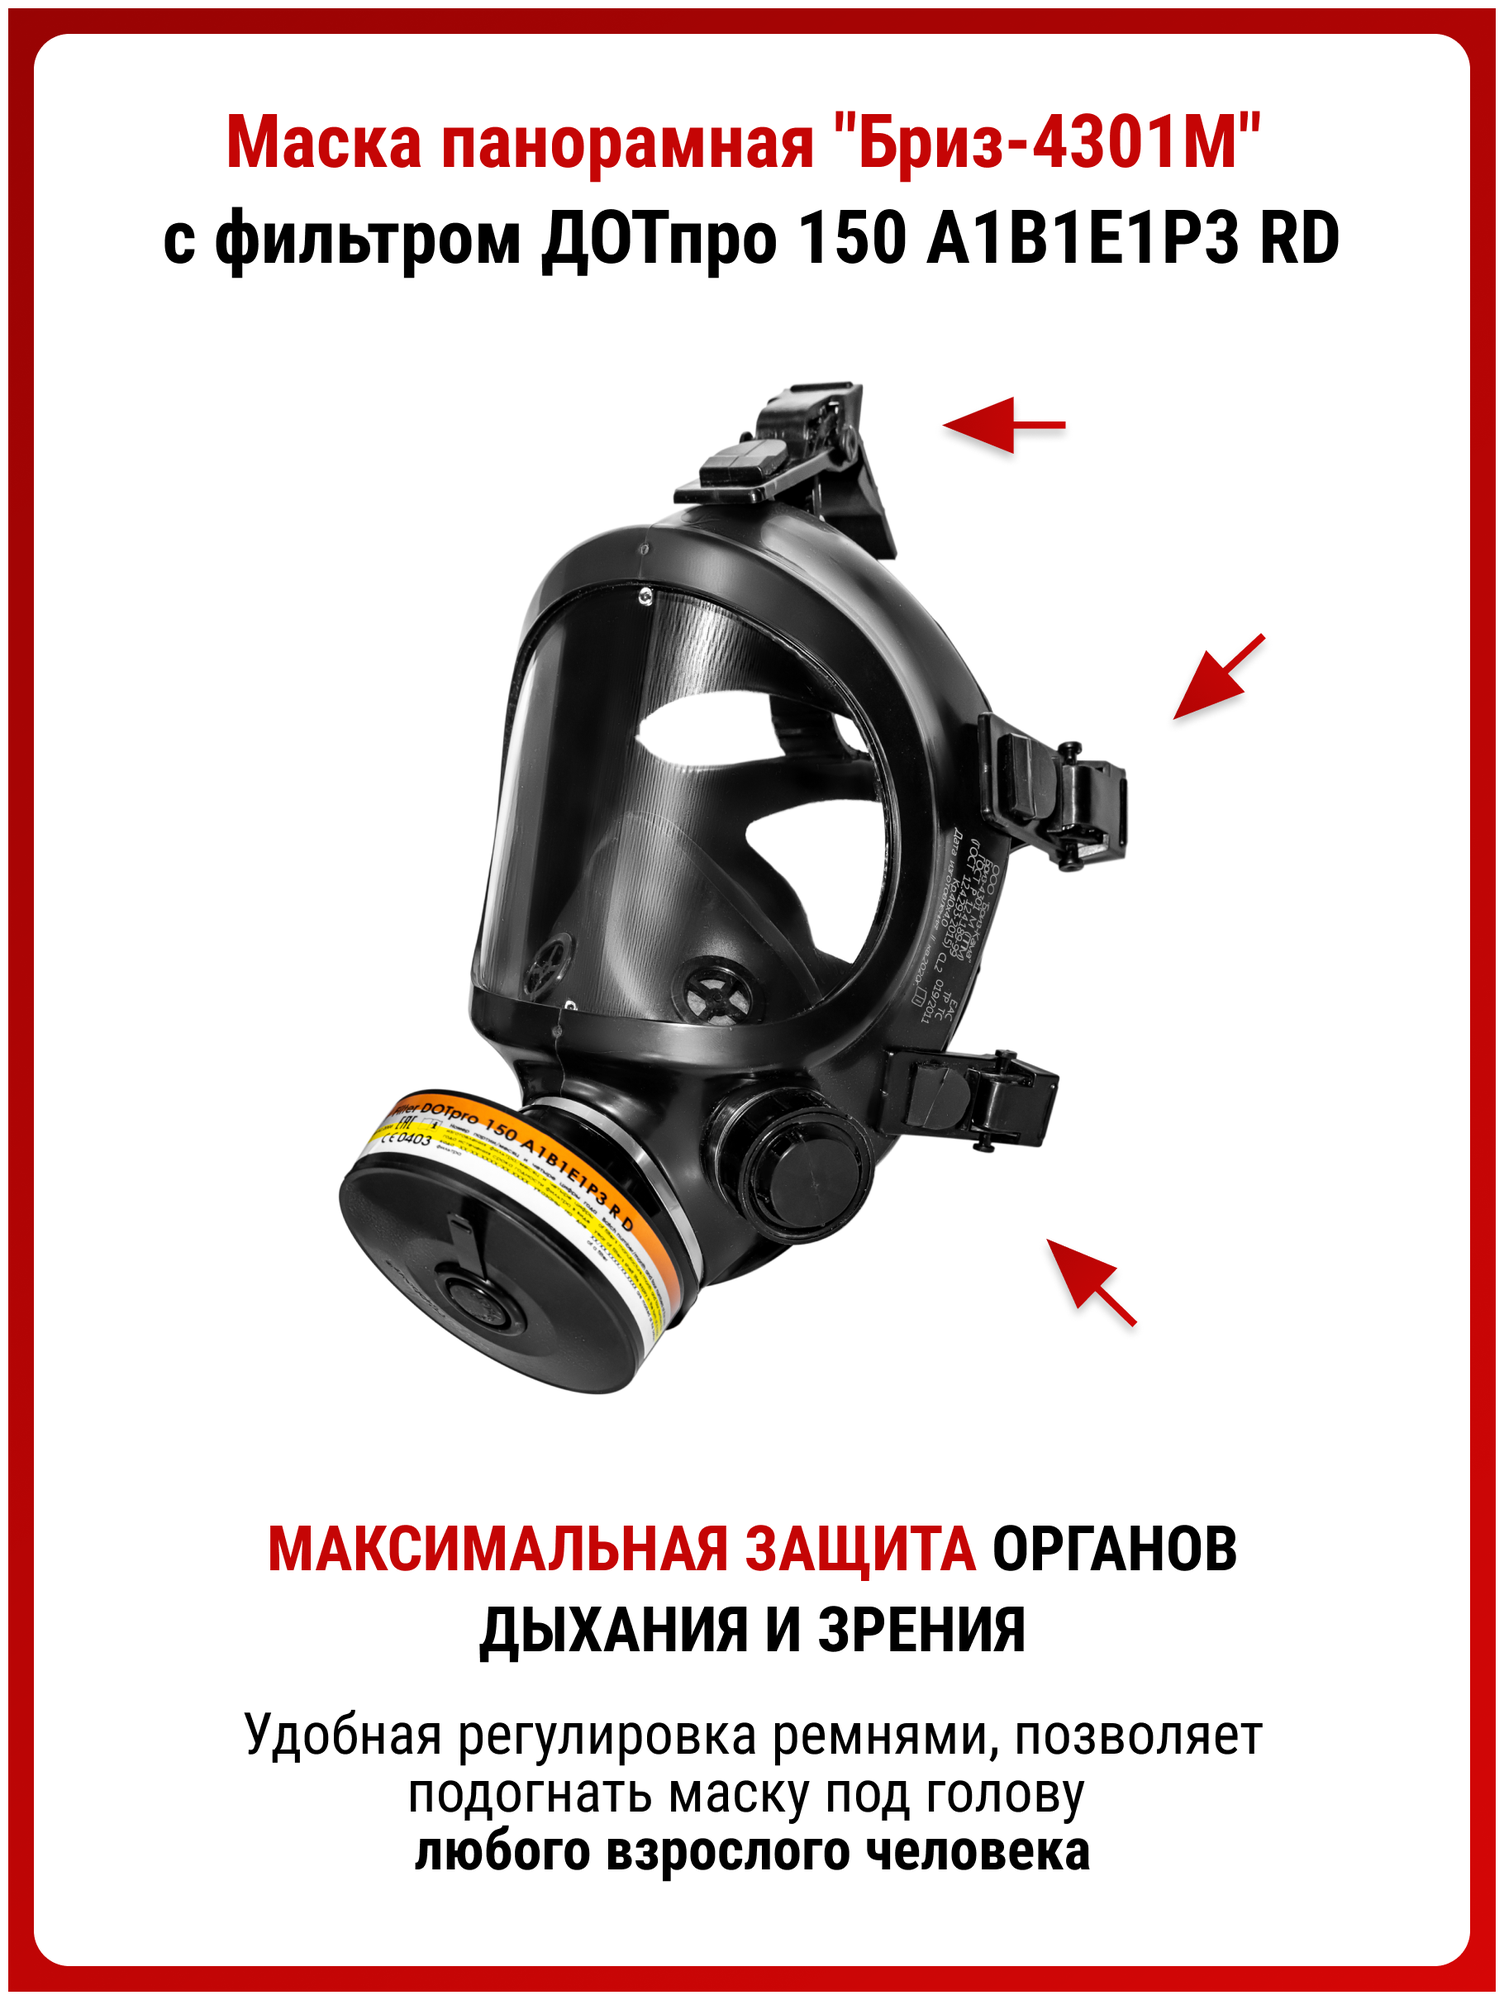 Профессиональный респиратор ffp3 противогаз Бриз 4301М маска защитная с угольным фильтром A1B1E1P3 RD распиратор от хлора краски пыли MARTEX размер L - фотография № 3